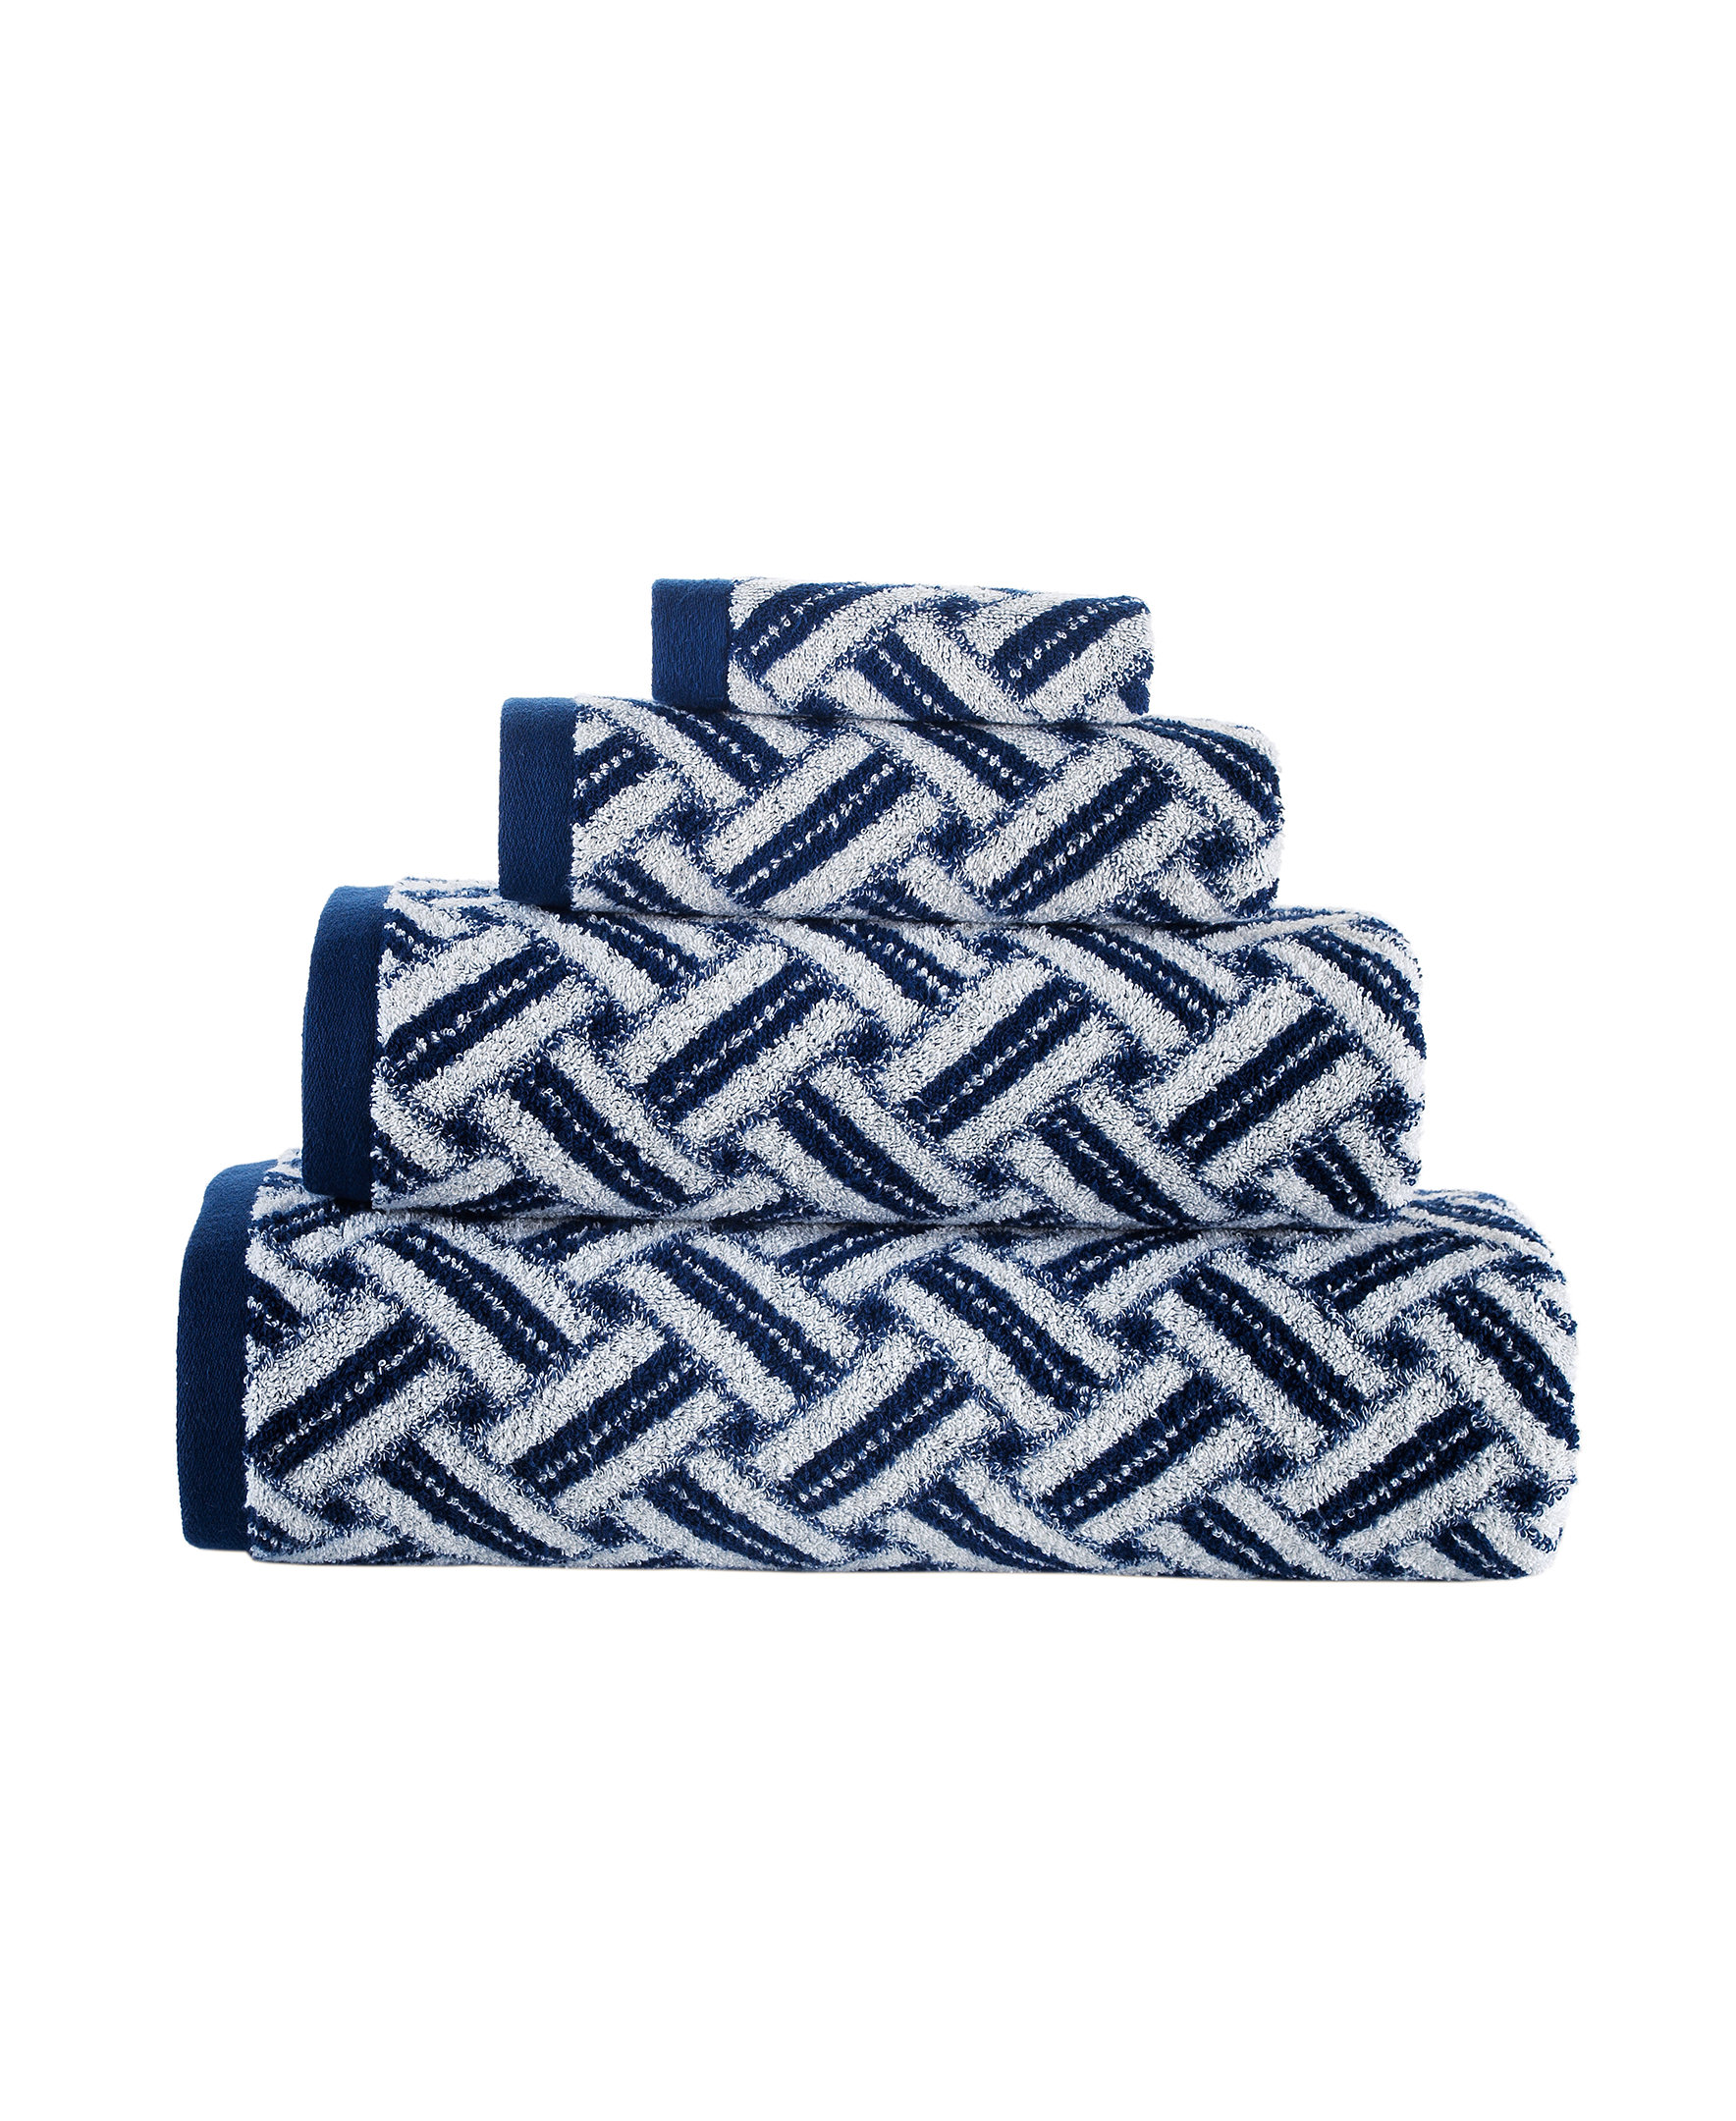 Pereira 6 Piece Jacquard Towel Set Alcott Hill Color: Navy